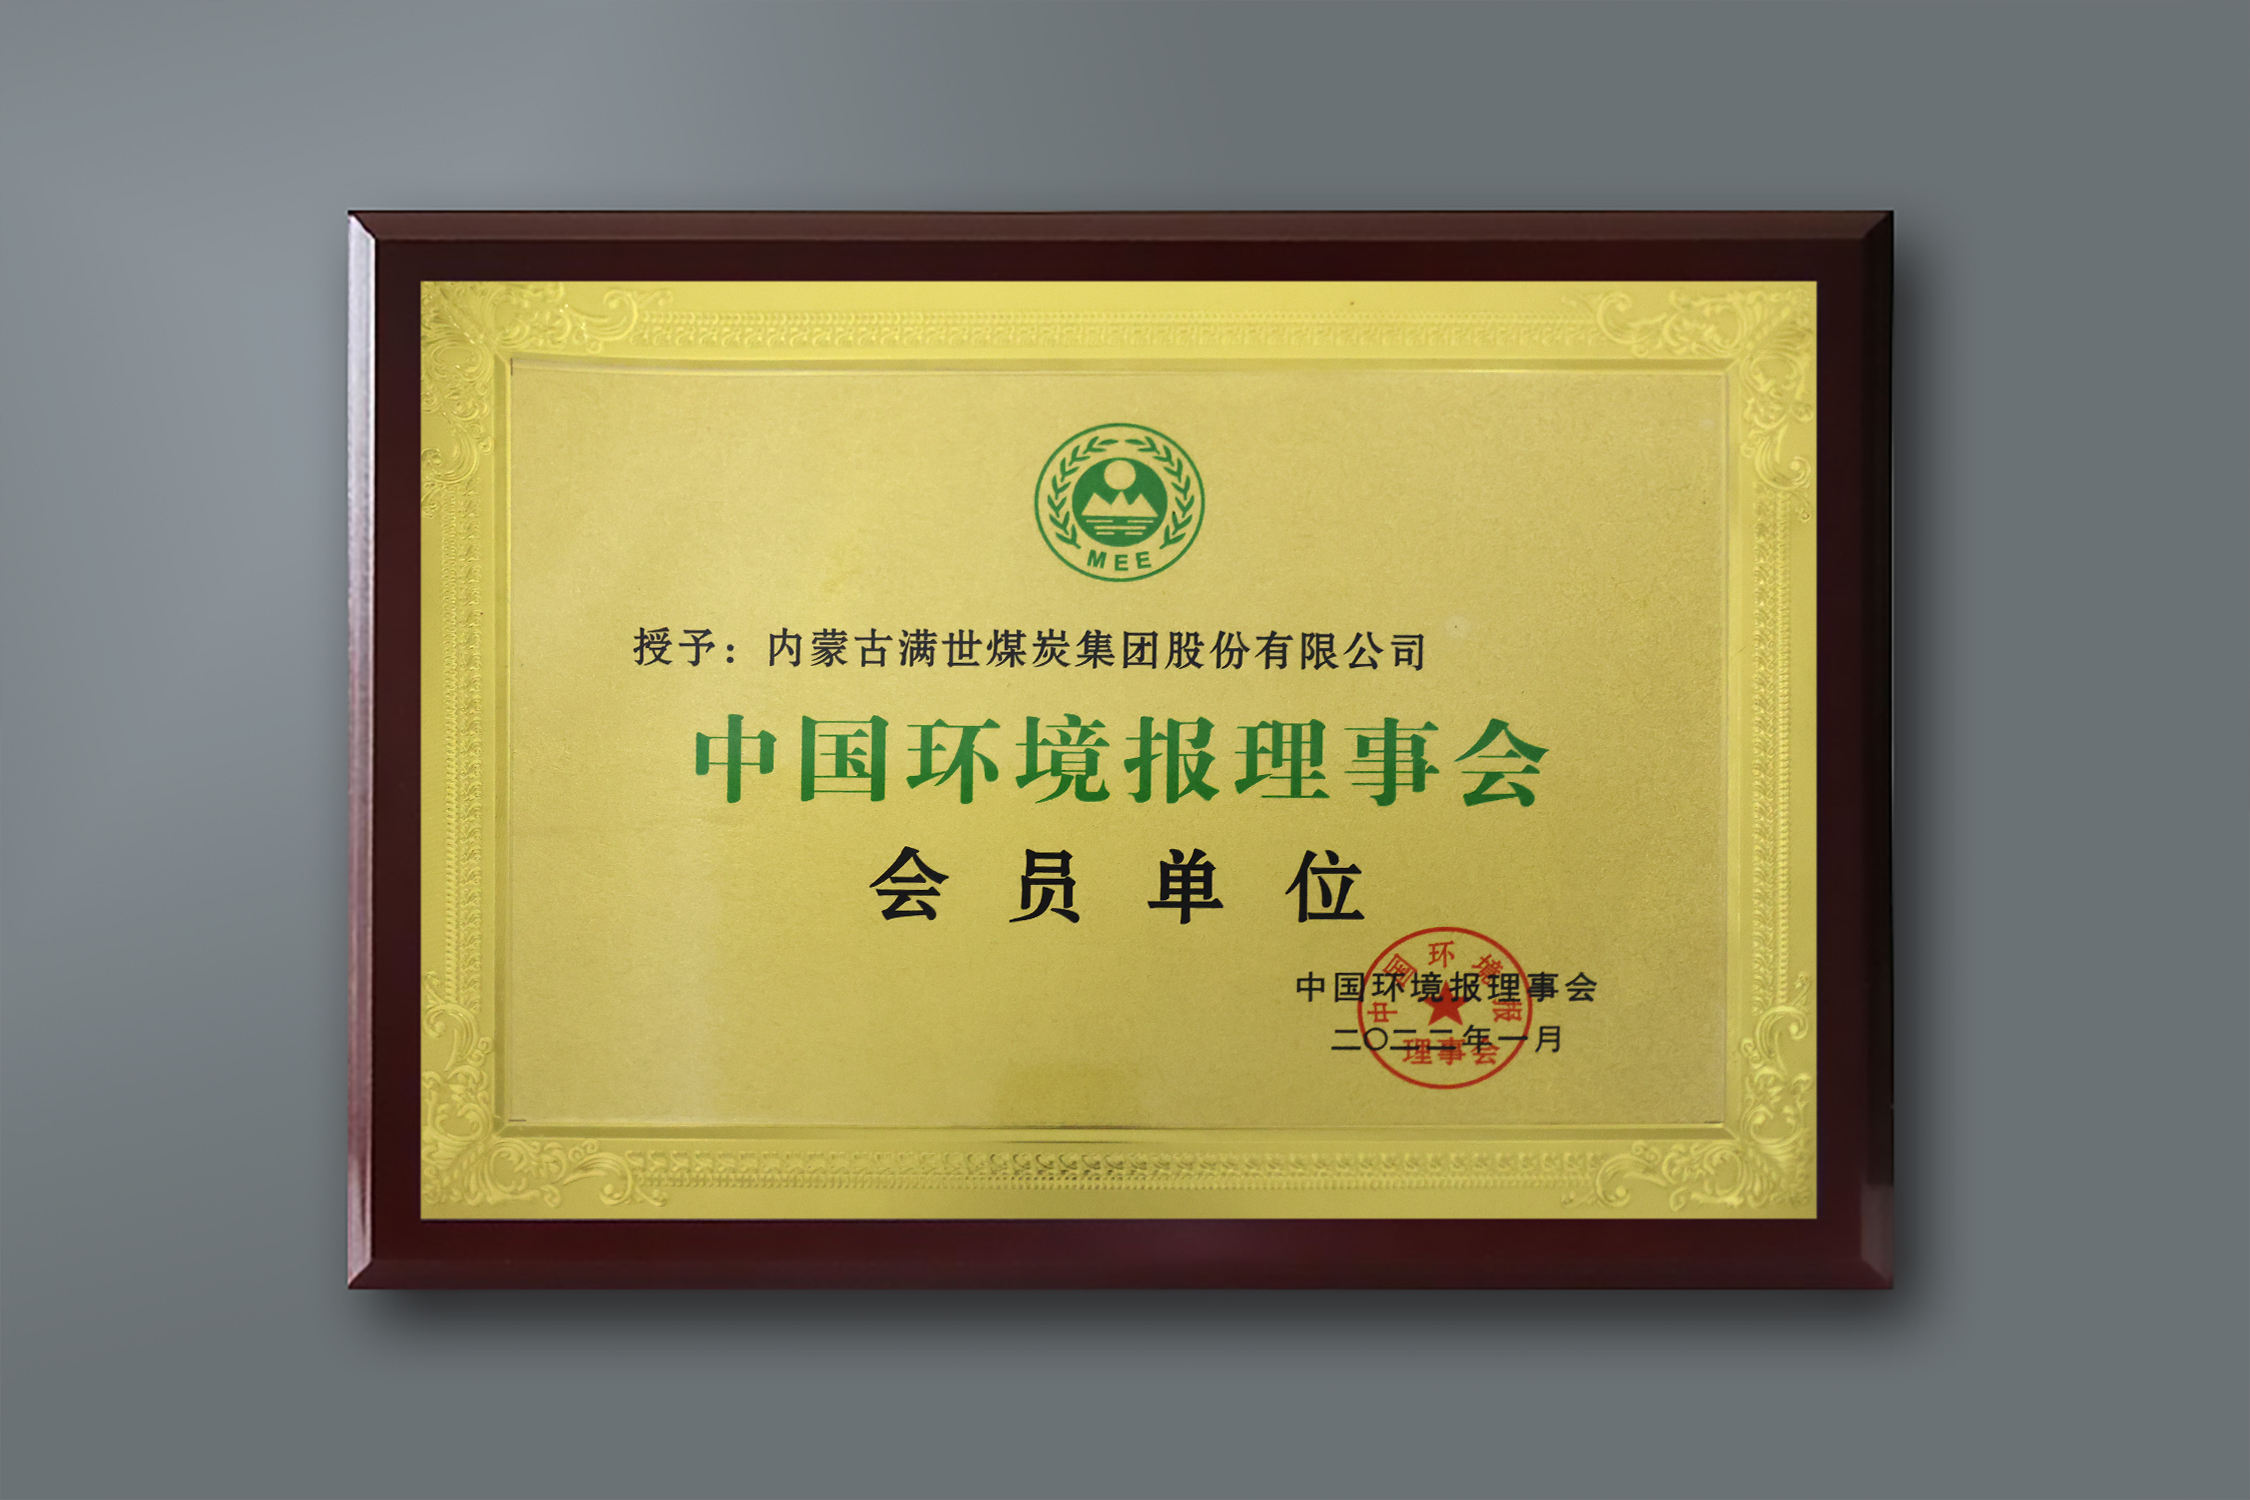 2022年 中国环境报理事会会员单位